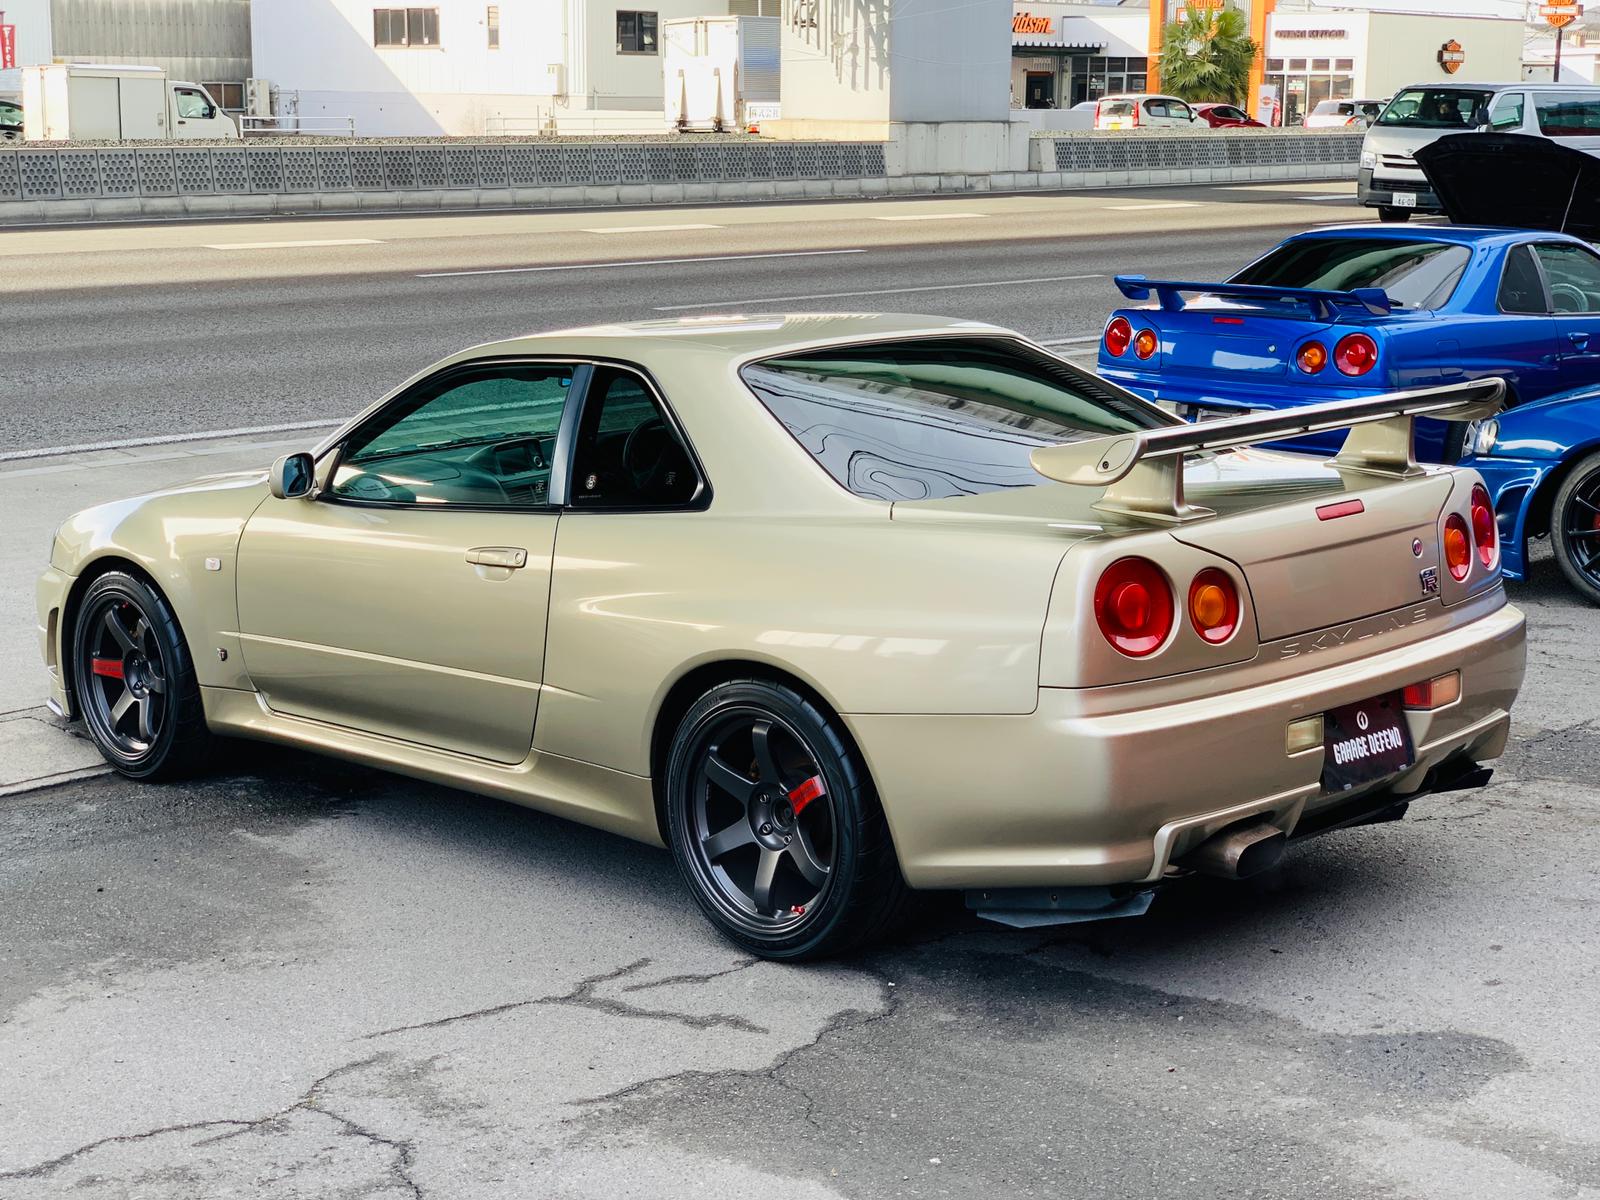 Nissan Skyline BNR34 GT-R M-Spec for sale (#3590) - Garage Defend